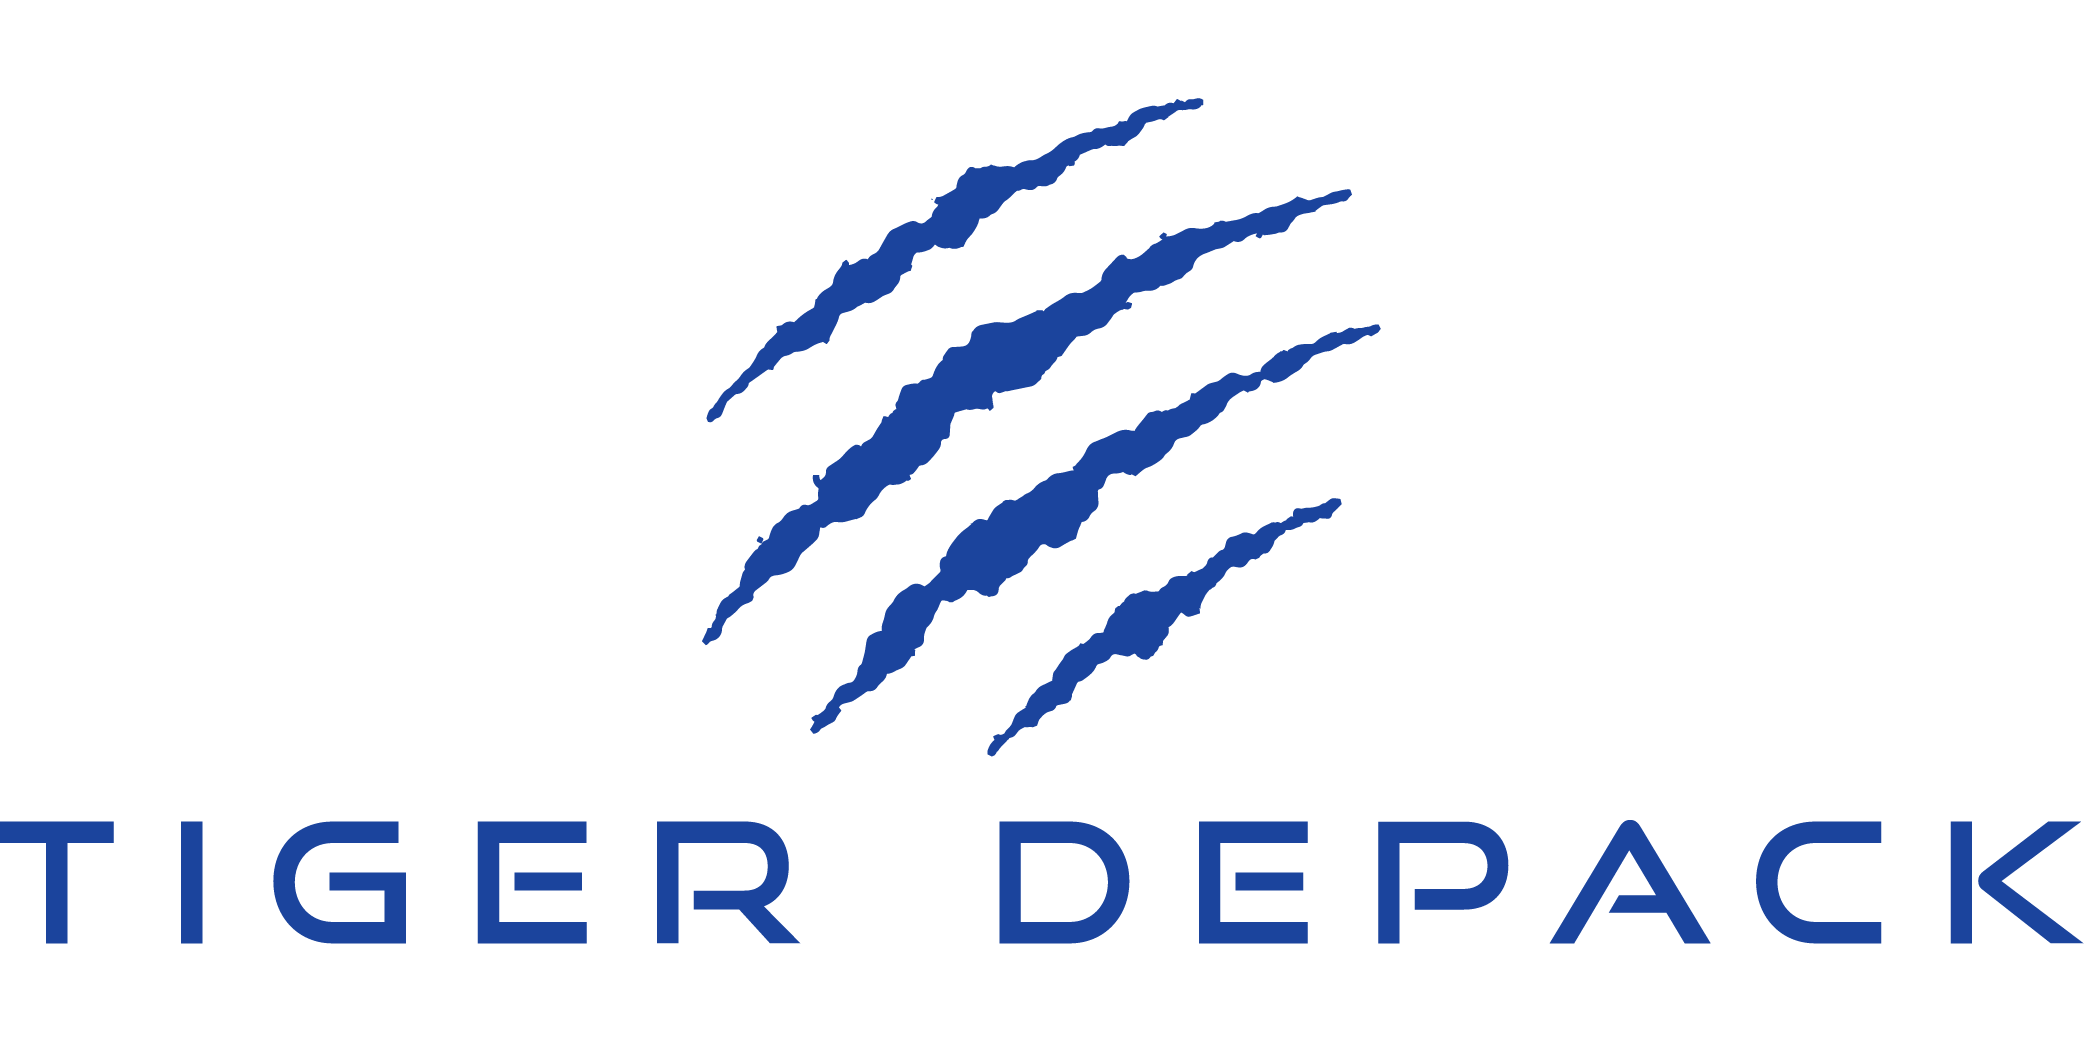 Brand Logos Cropped_Tiger Depack